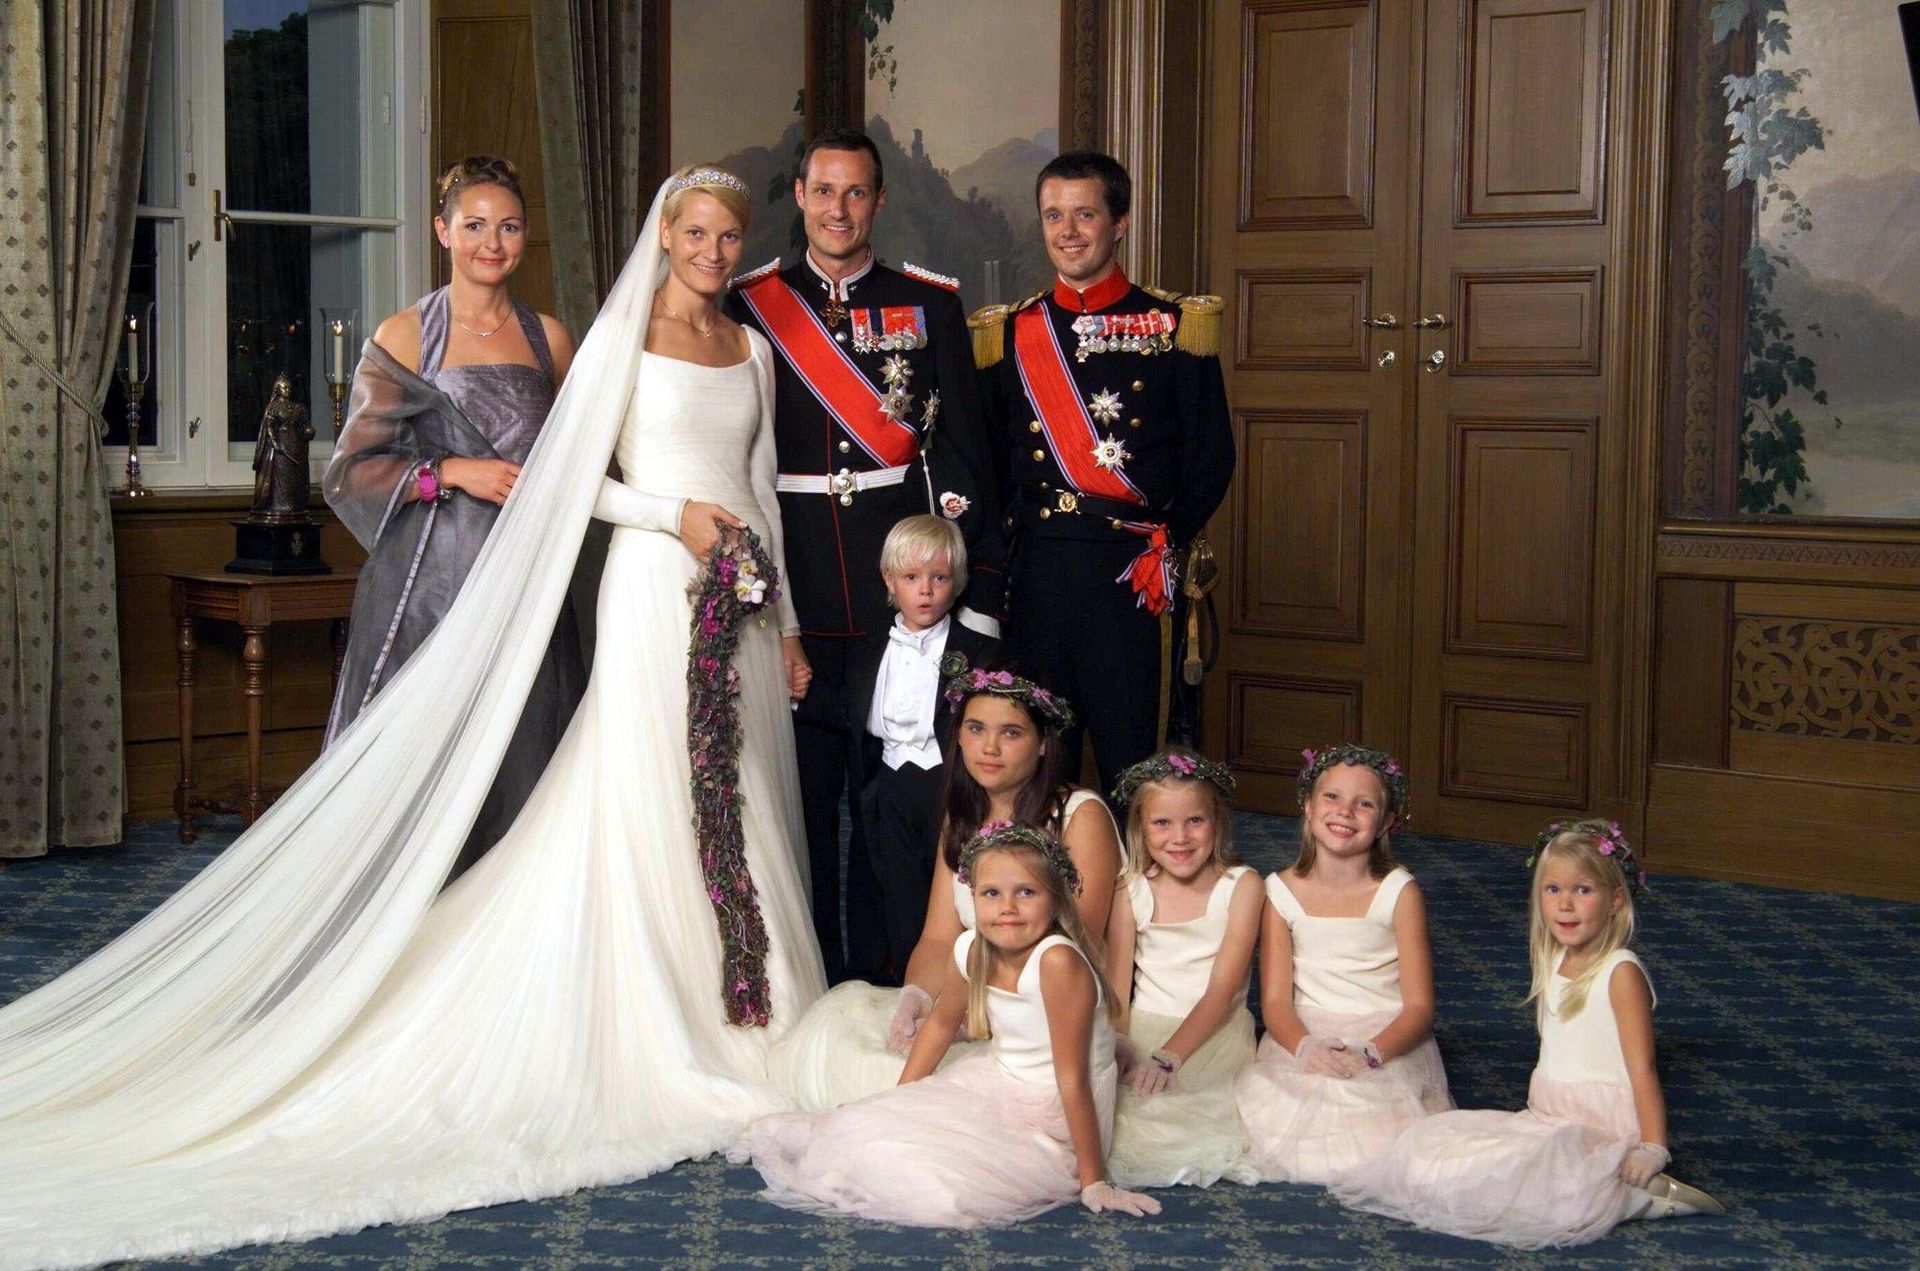 Mette-Marit trouwde in 2001 met de Noorse prins Haakon. Bijzonder bij haar bruidsjurk was het lange,